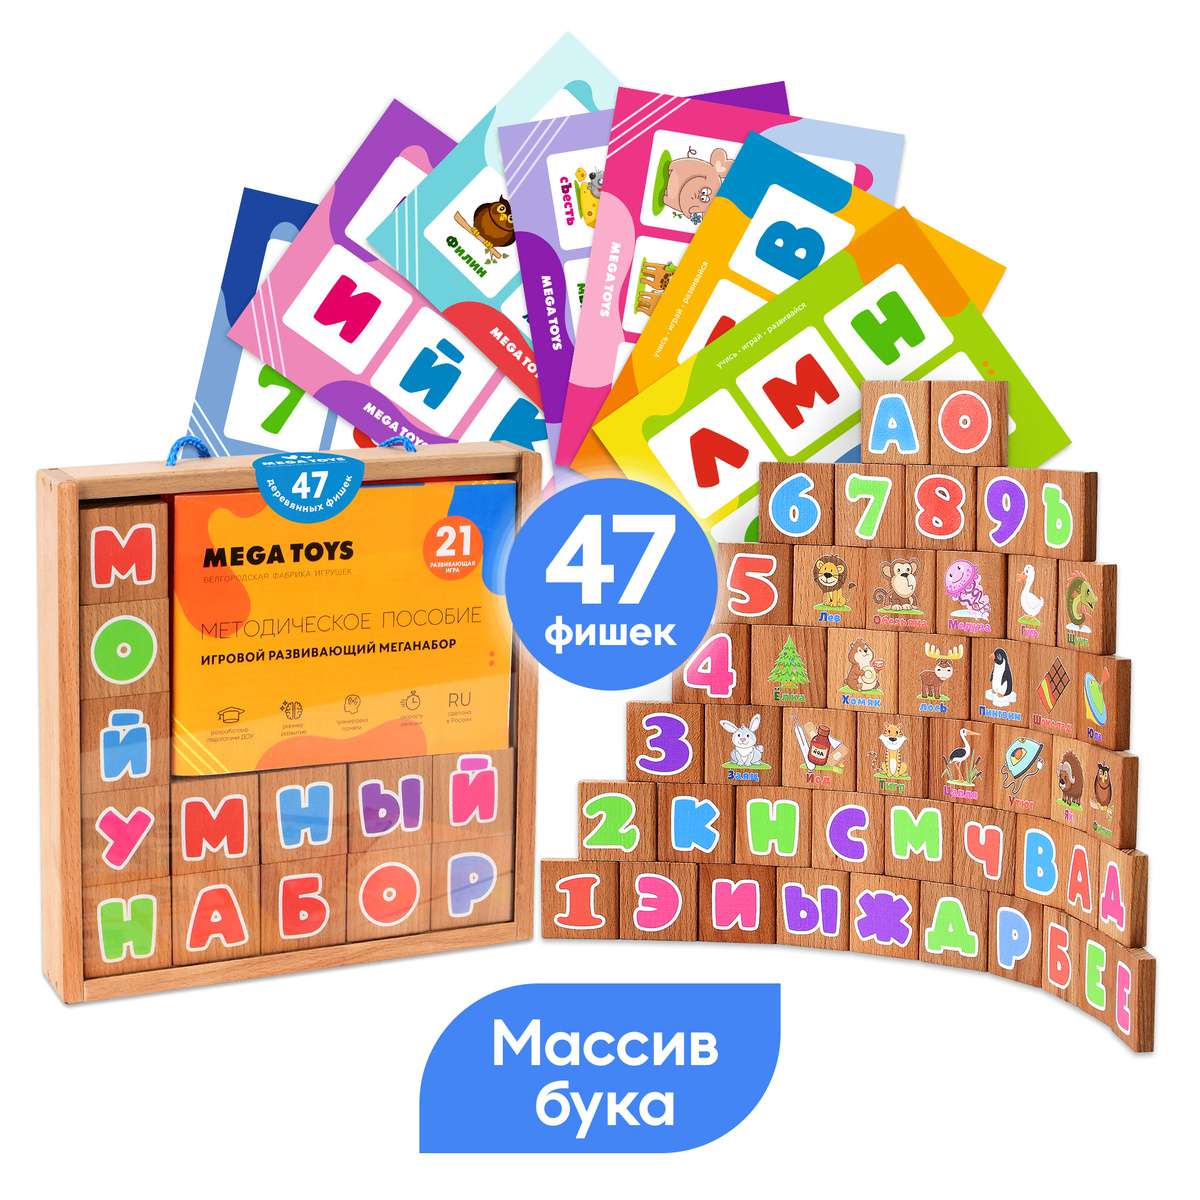 Набор обучающих игр 17988 в чемодане с методическим пособием Мега Тойс - Саранск 